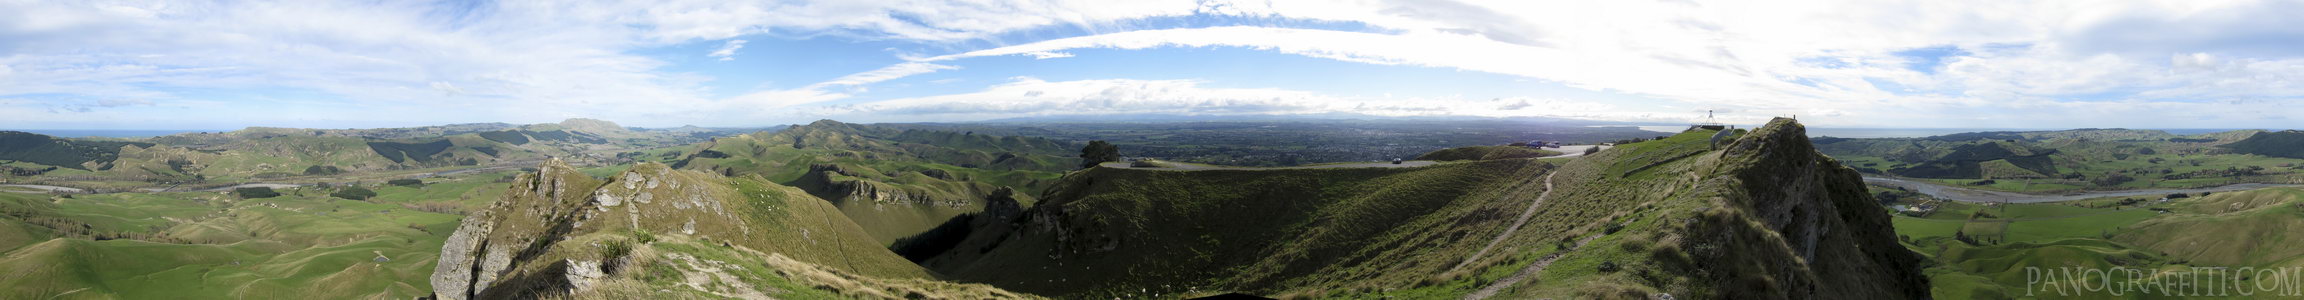 360 View of Te Mata Peak - Te Mata Peak is located south of Hastings outside of Hawke's Bay